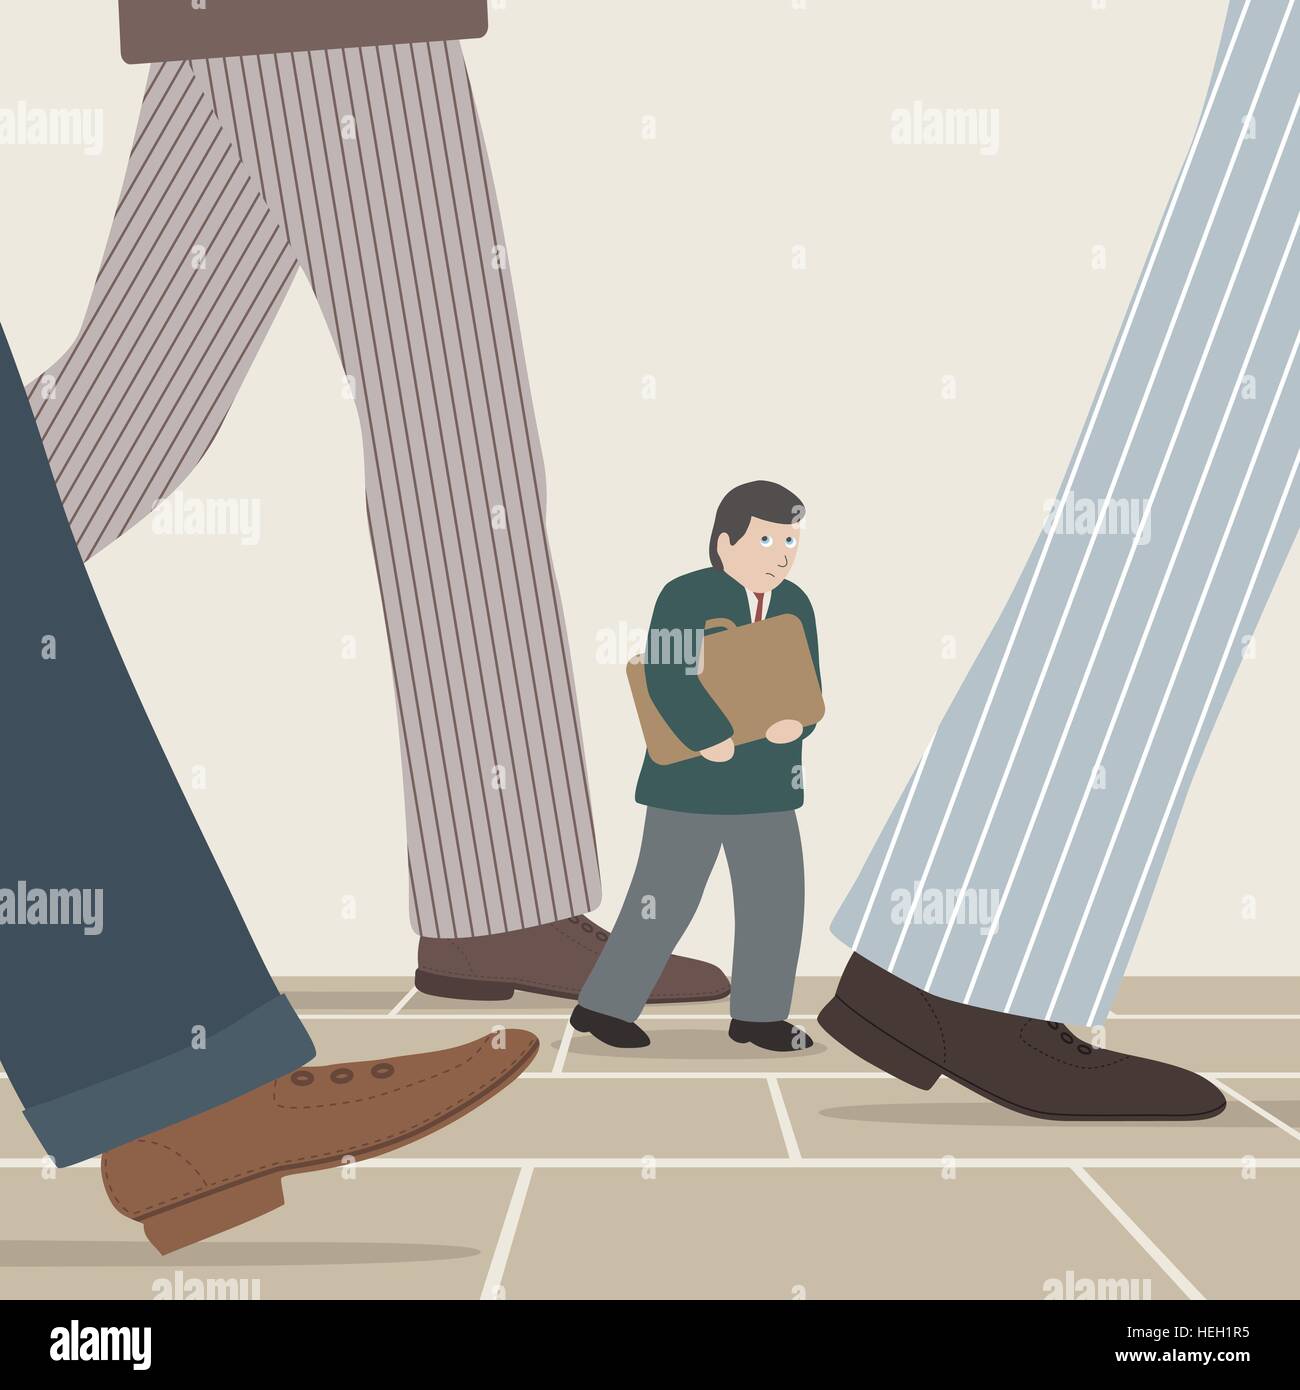 Illustrazione vettoriale di un piccolo imprenditore a piedi tra le gambe intimidatorio di imprenditori di grandi dimensioni Illustrazione Vettoriale